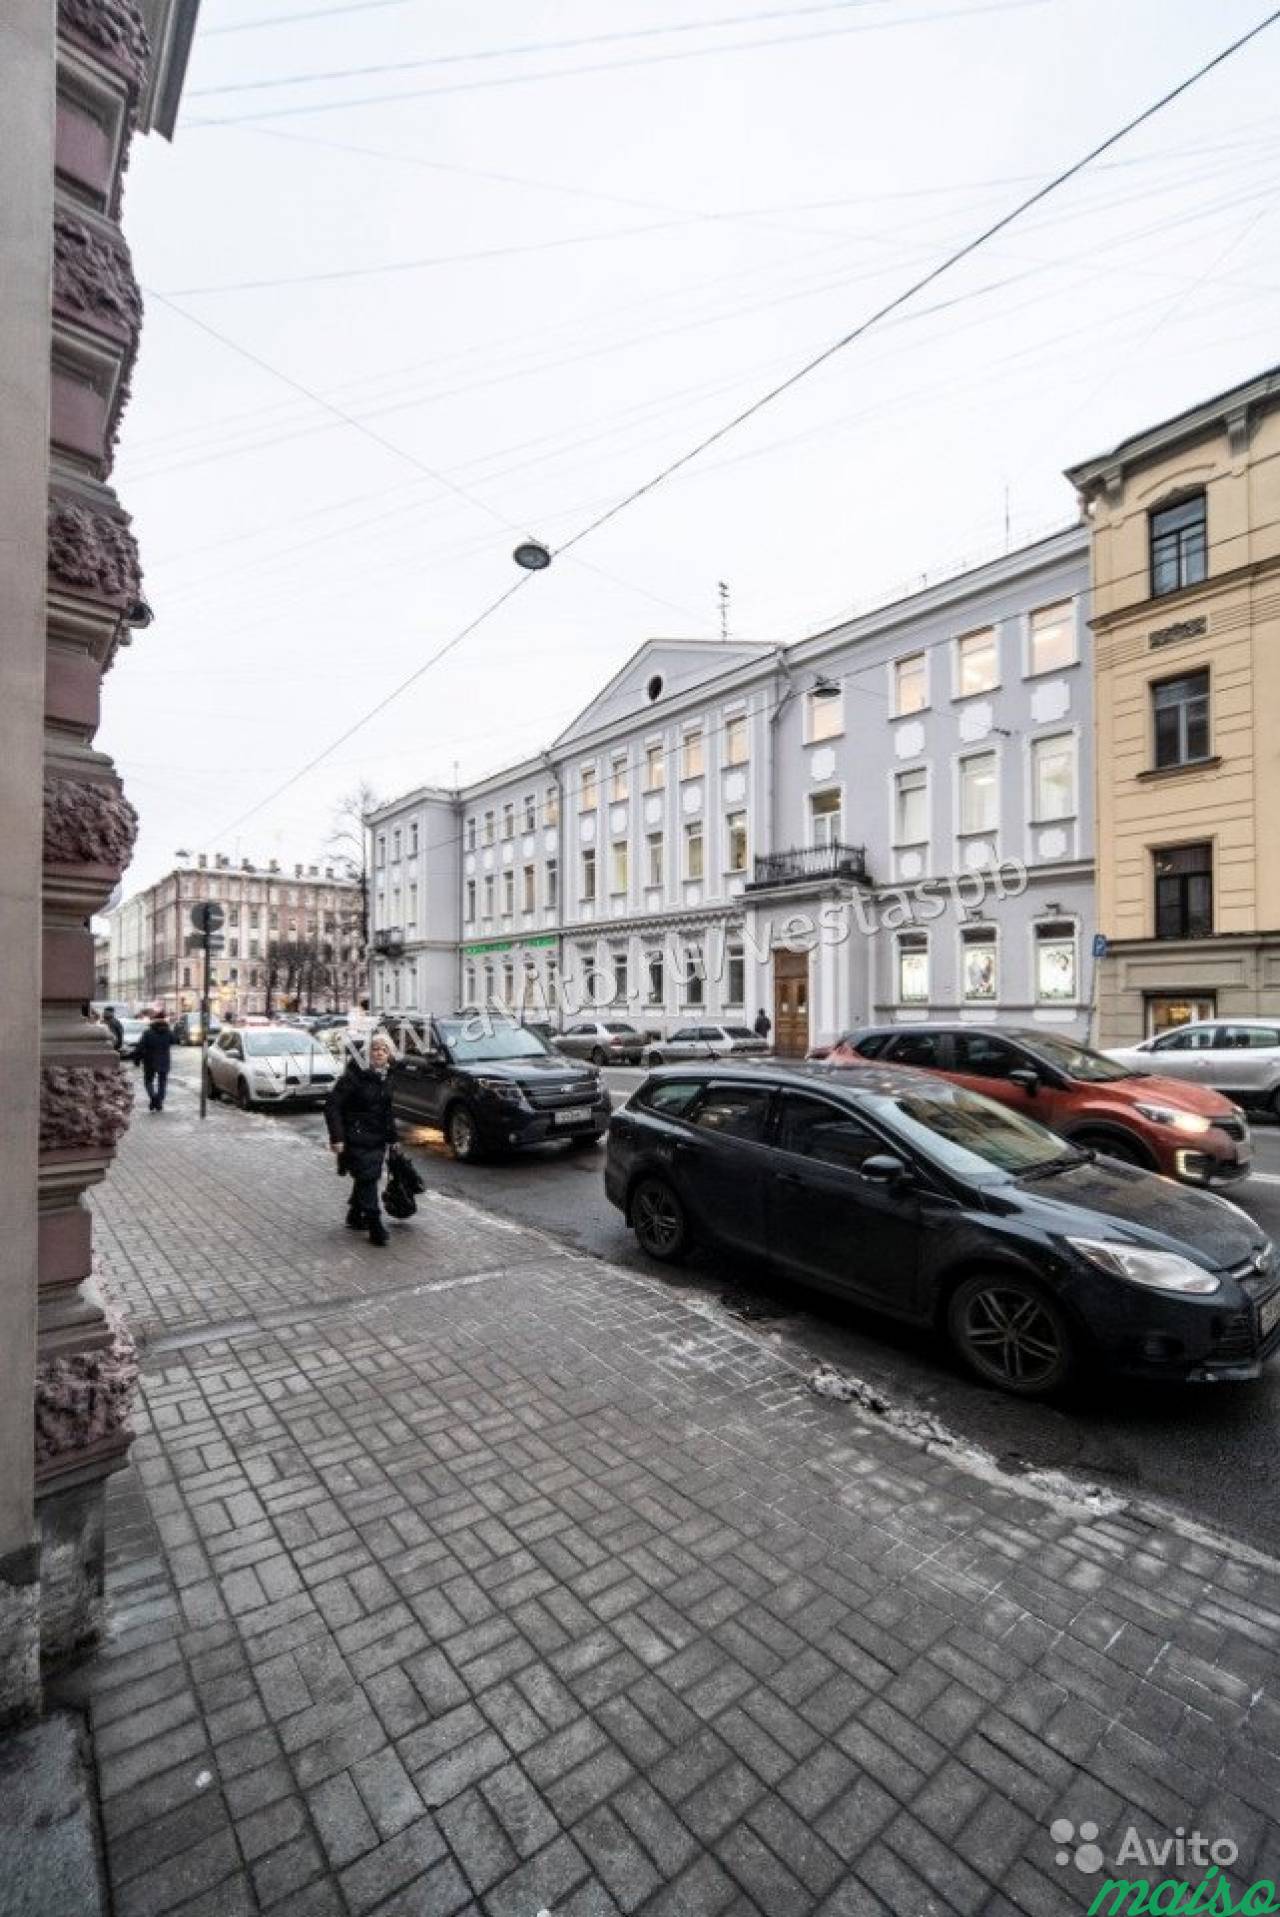 Здание в центре Санкт-Петербурга на улице Некрасов в Санкт-Петербурге. Фото 2